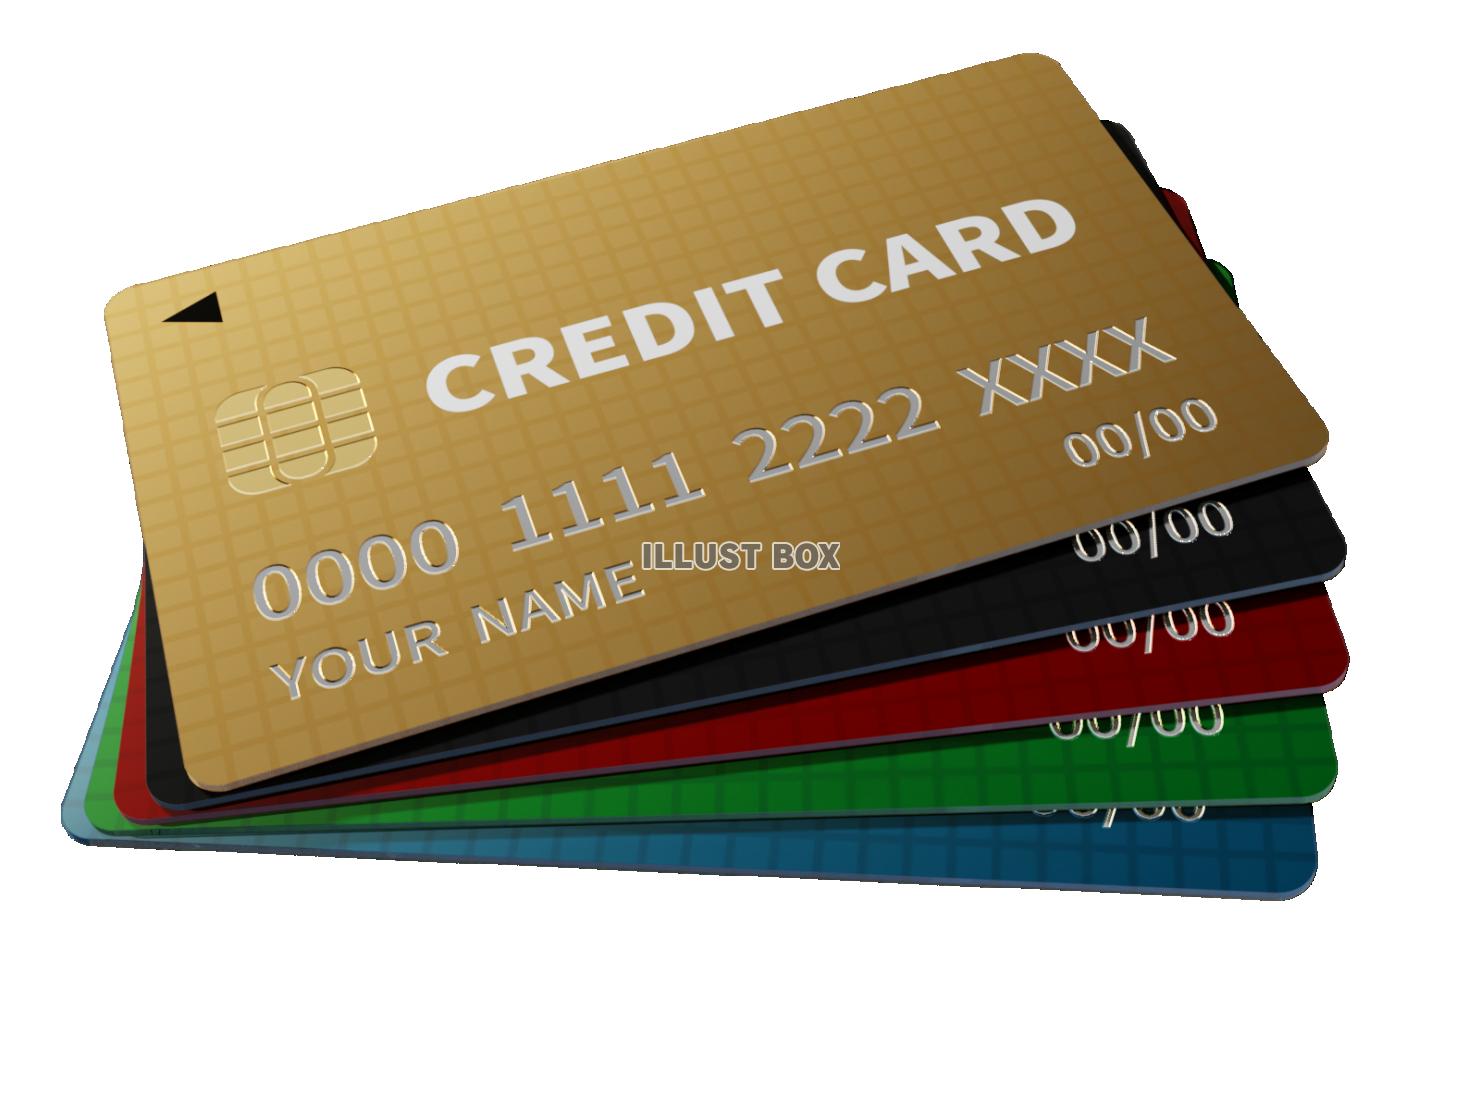 複数のリアルなクレジットカードのサンプル素材【透過PNG】